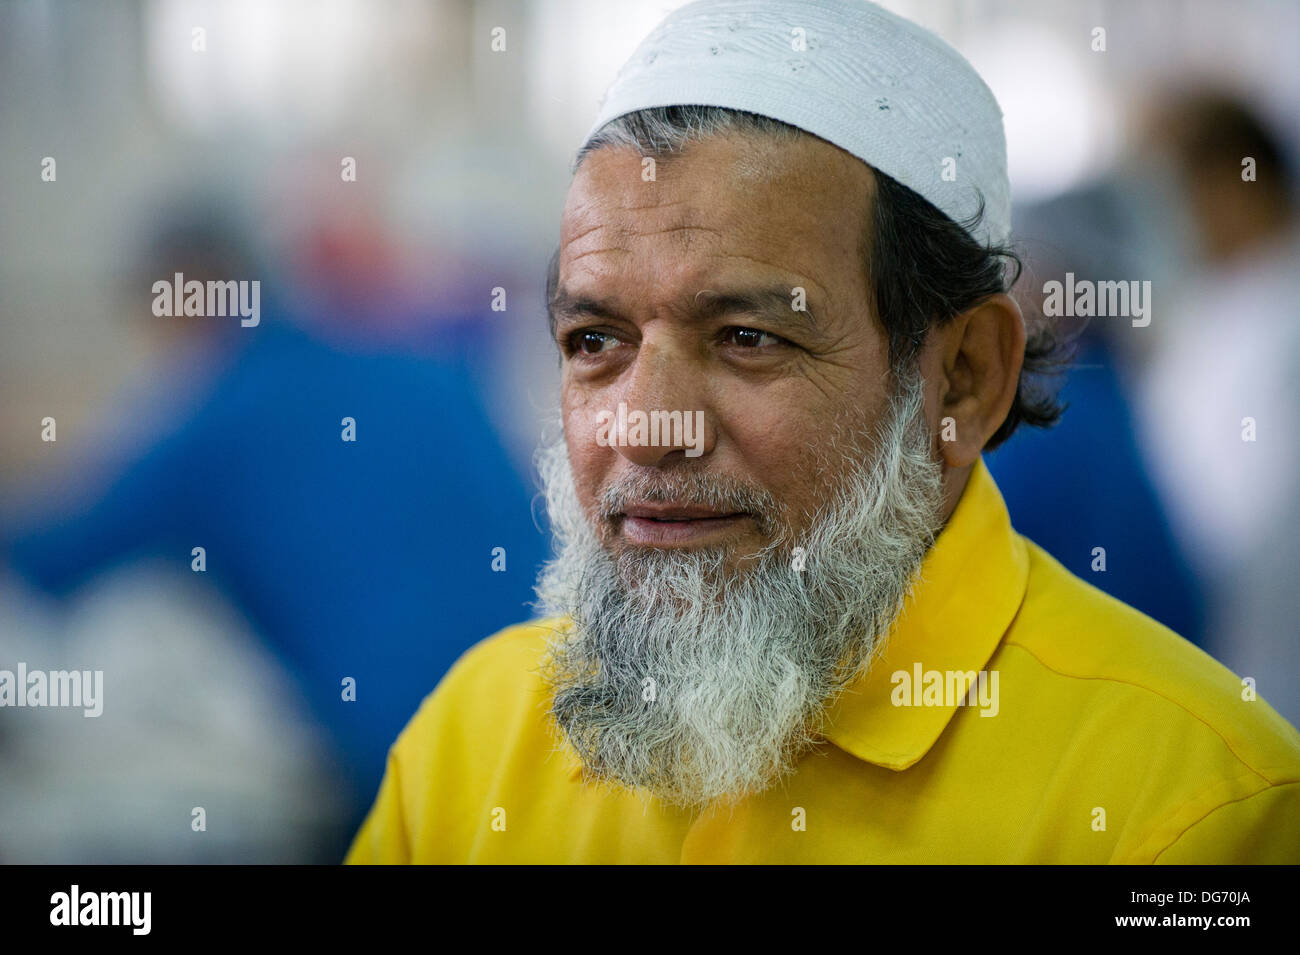 Homme de l'origine ethnique du Moyen-Orient, travaillant dans un marché aux poissons à Abu Dhabi Banque D'Images